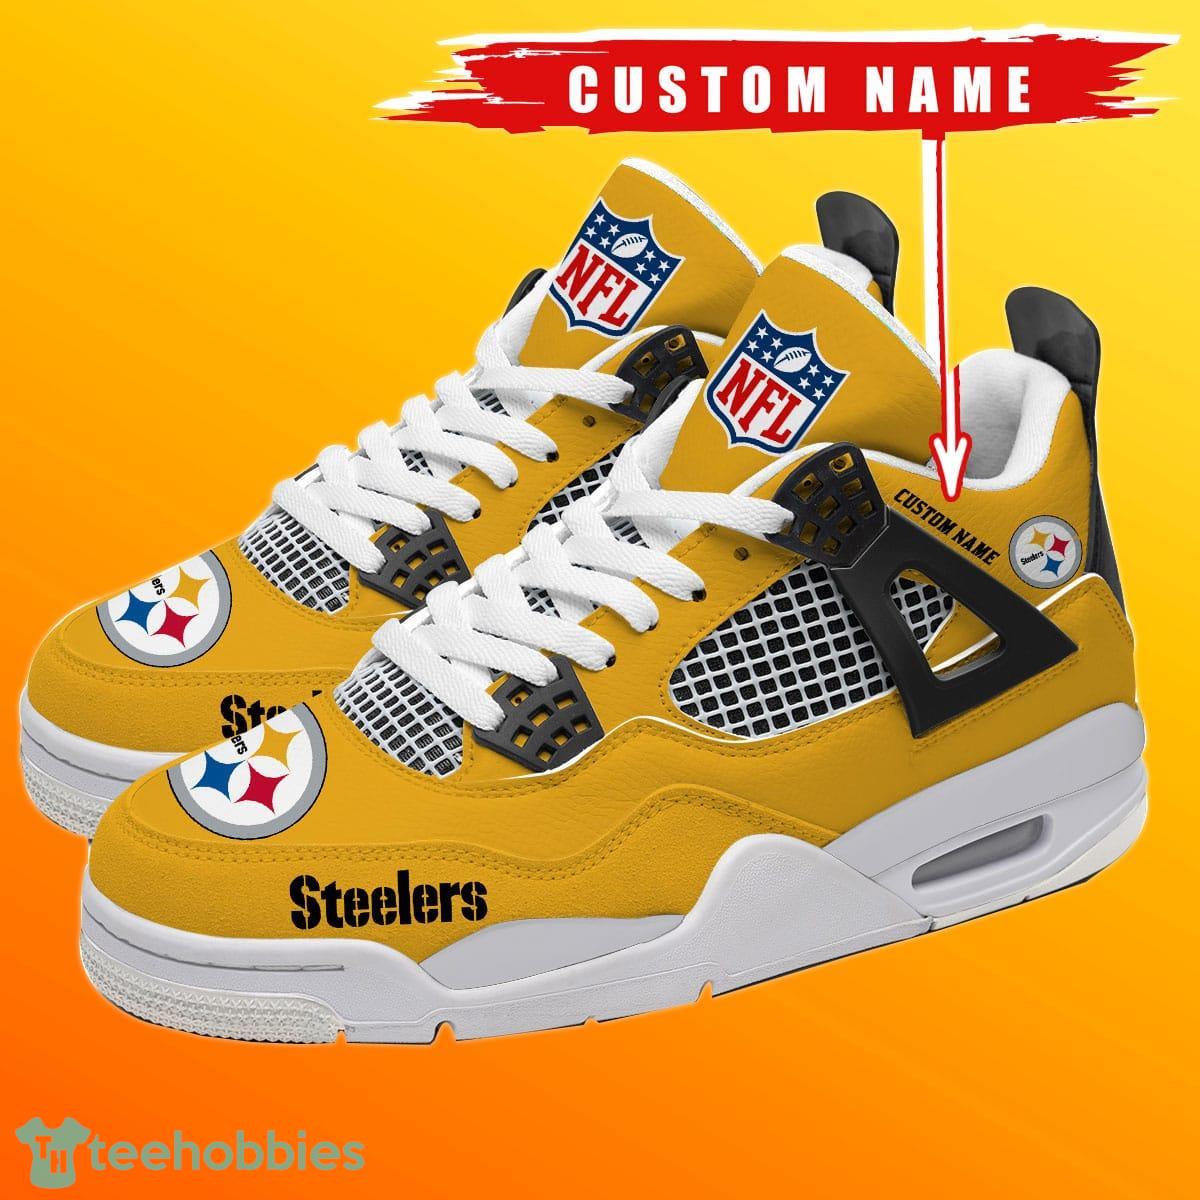 https://image.teehobbies.us/2023/08/pittsburgh-steelers-personalized-name-nfl-air-jordan-4-trending-sneaker-special-gift-for-fans.jpg